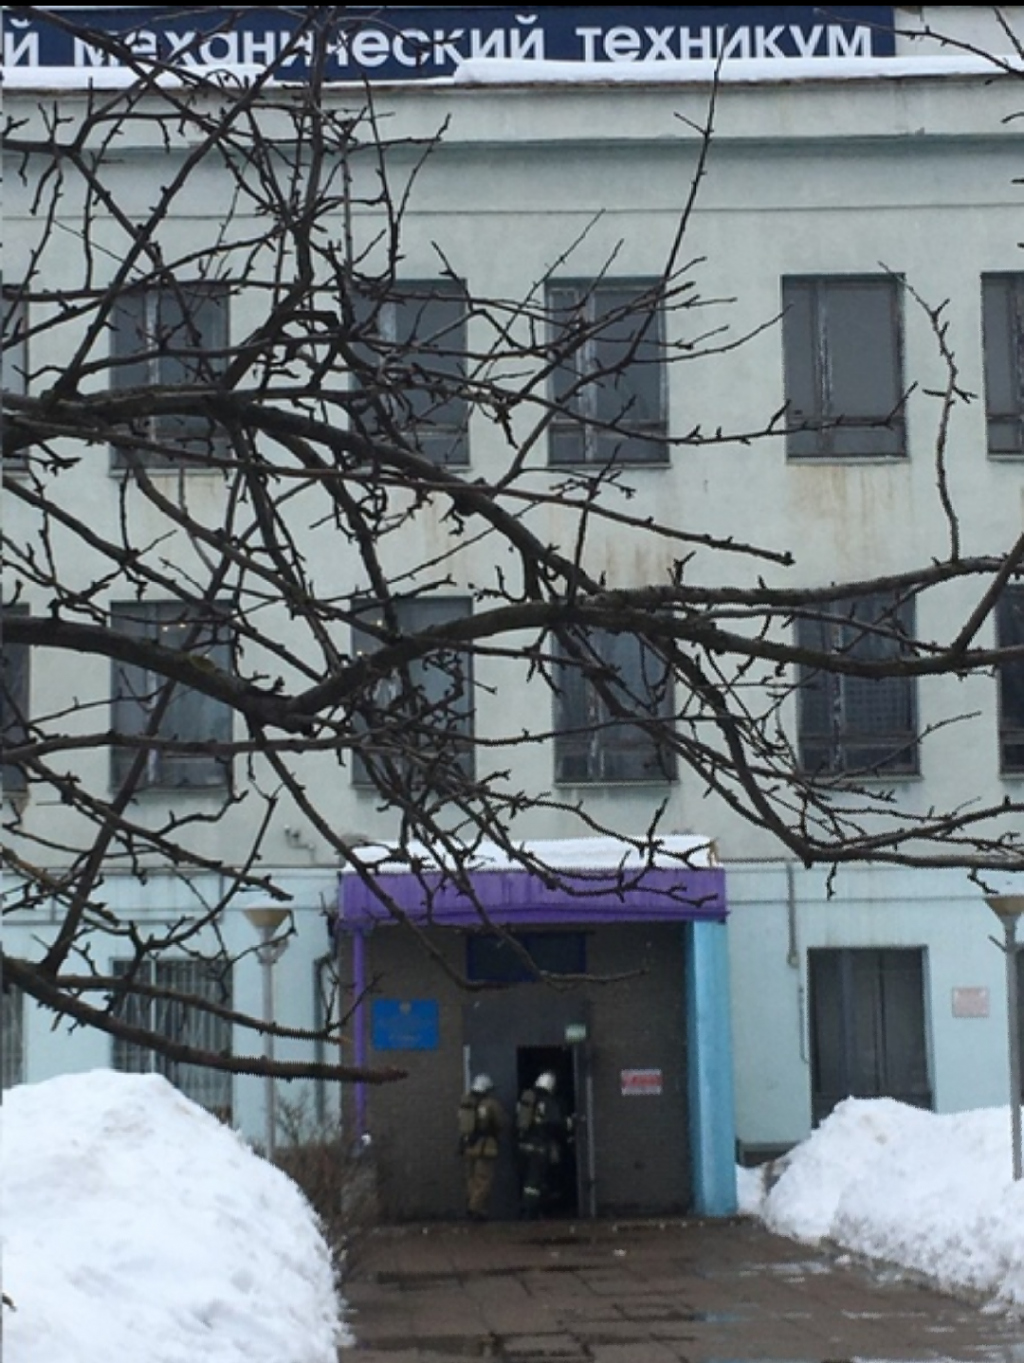 в механическом техникуме в Нижнем Новгороде частично рухнул потолок 26 февраля